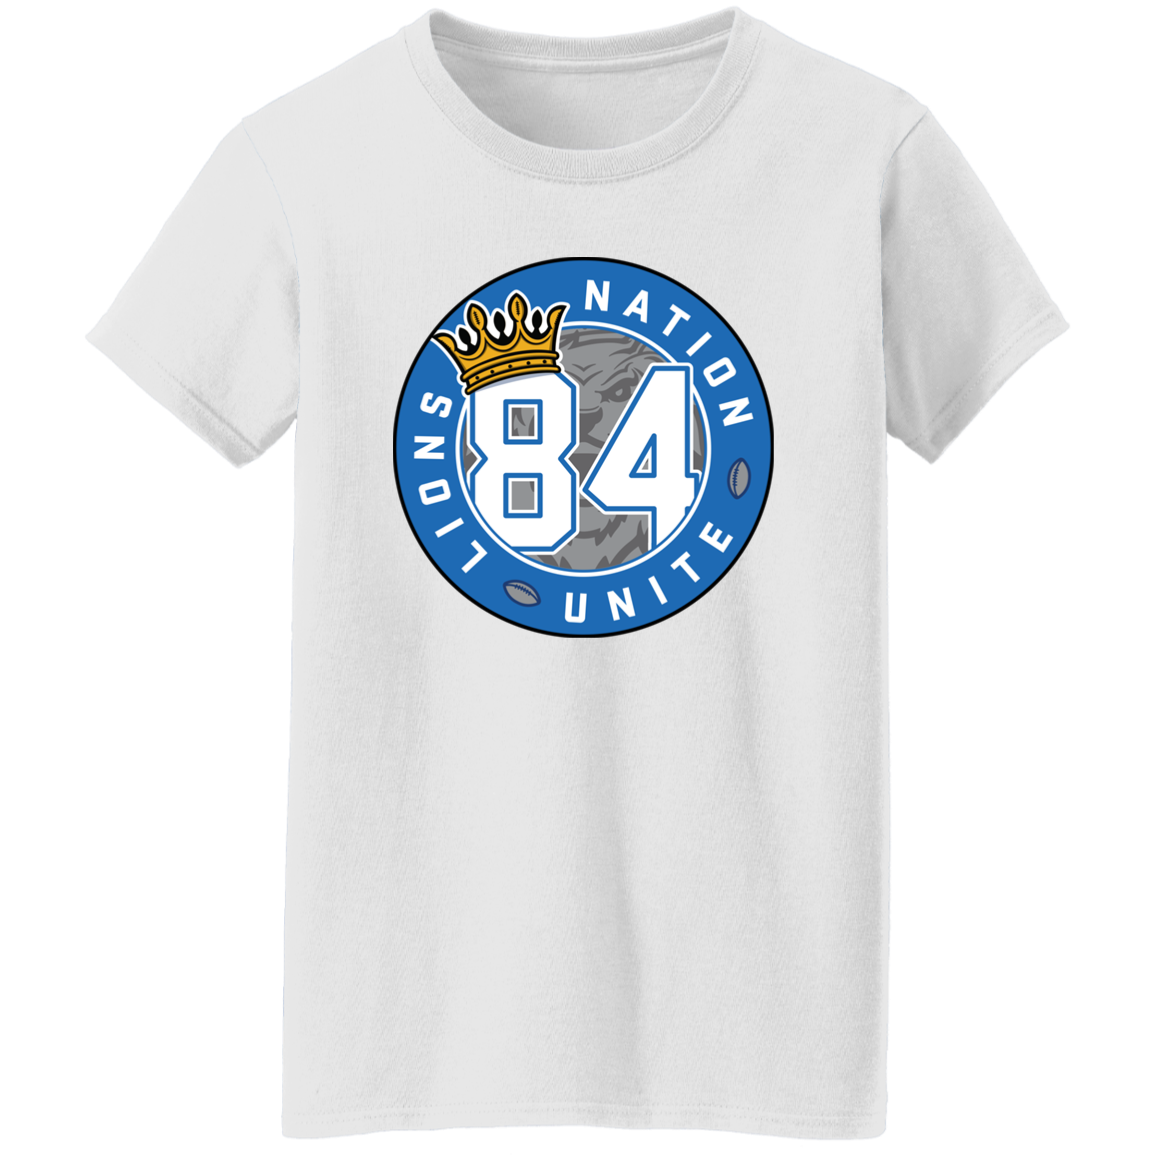 No. 84 Lions Nation Unite® Ladies' T-Shirt